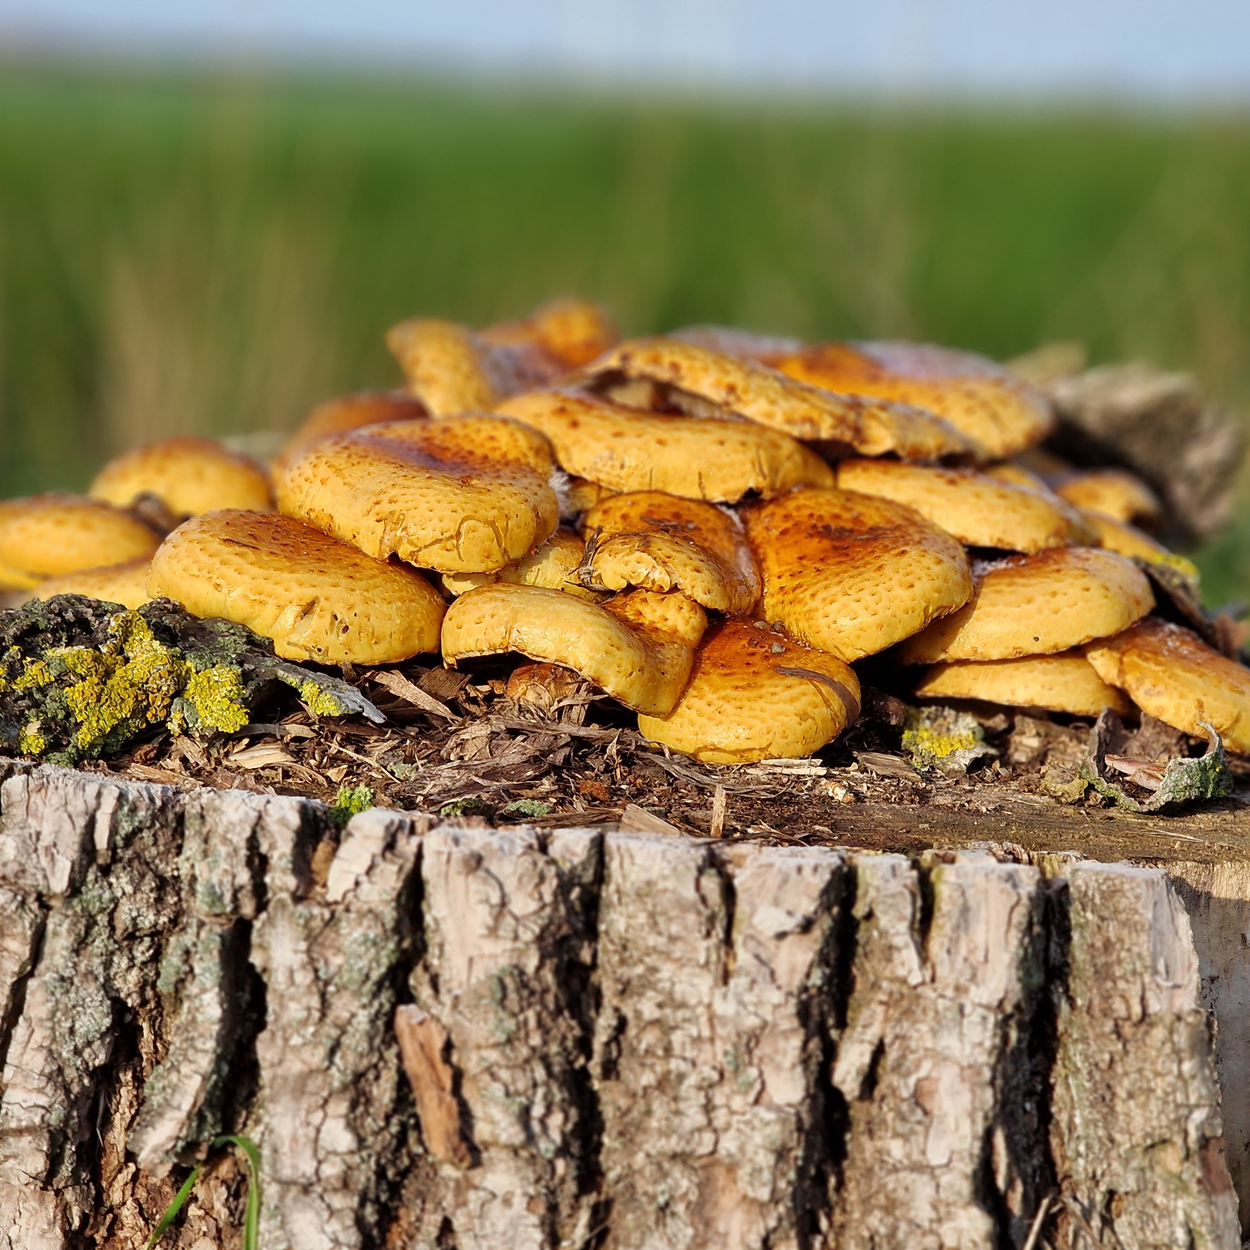 Mushrooms on tree stump November 2022